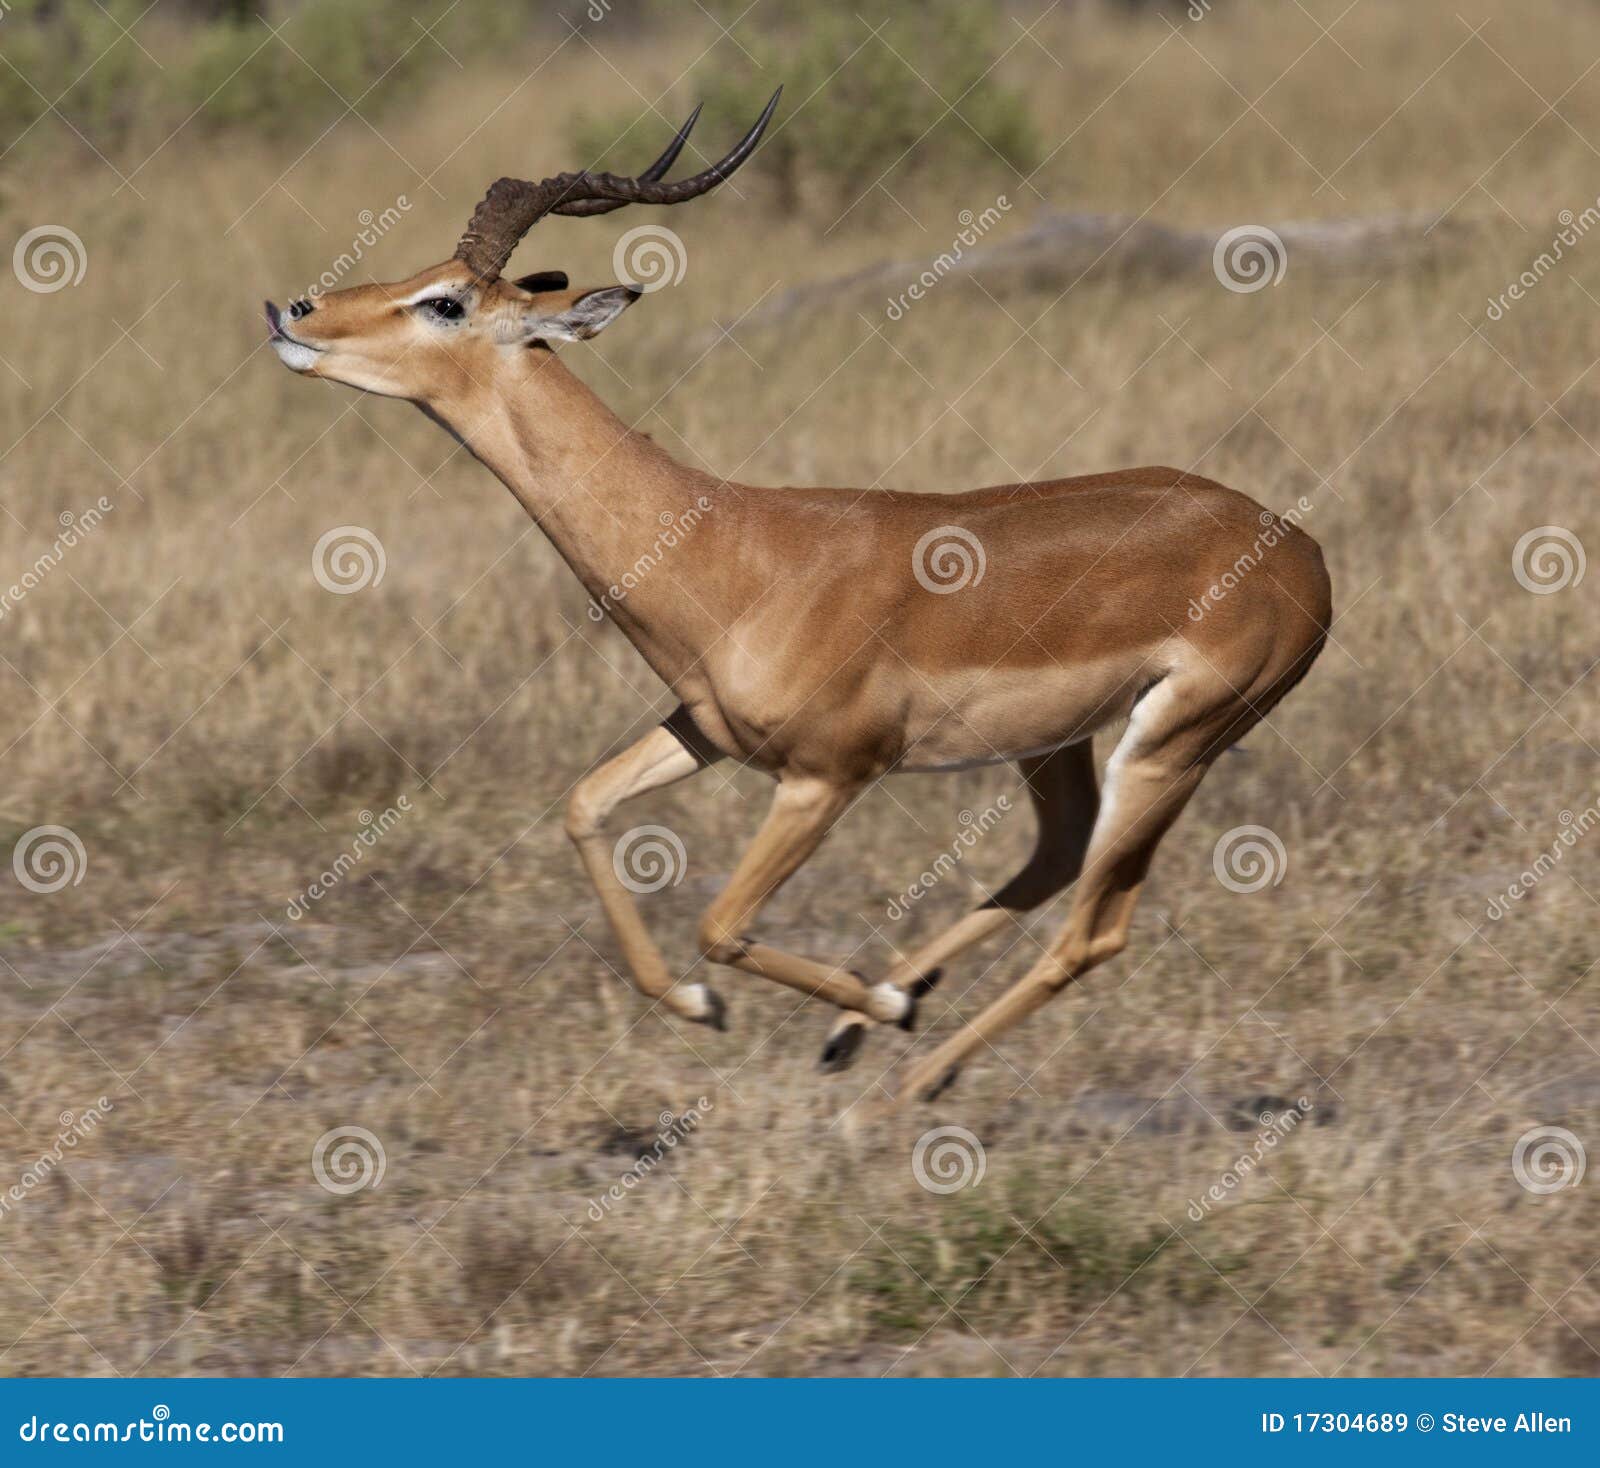 impala running _ botswana